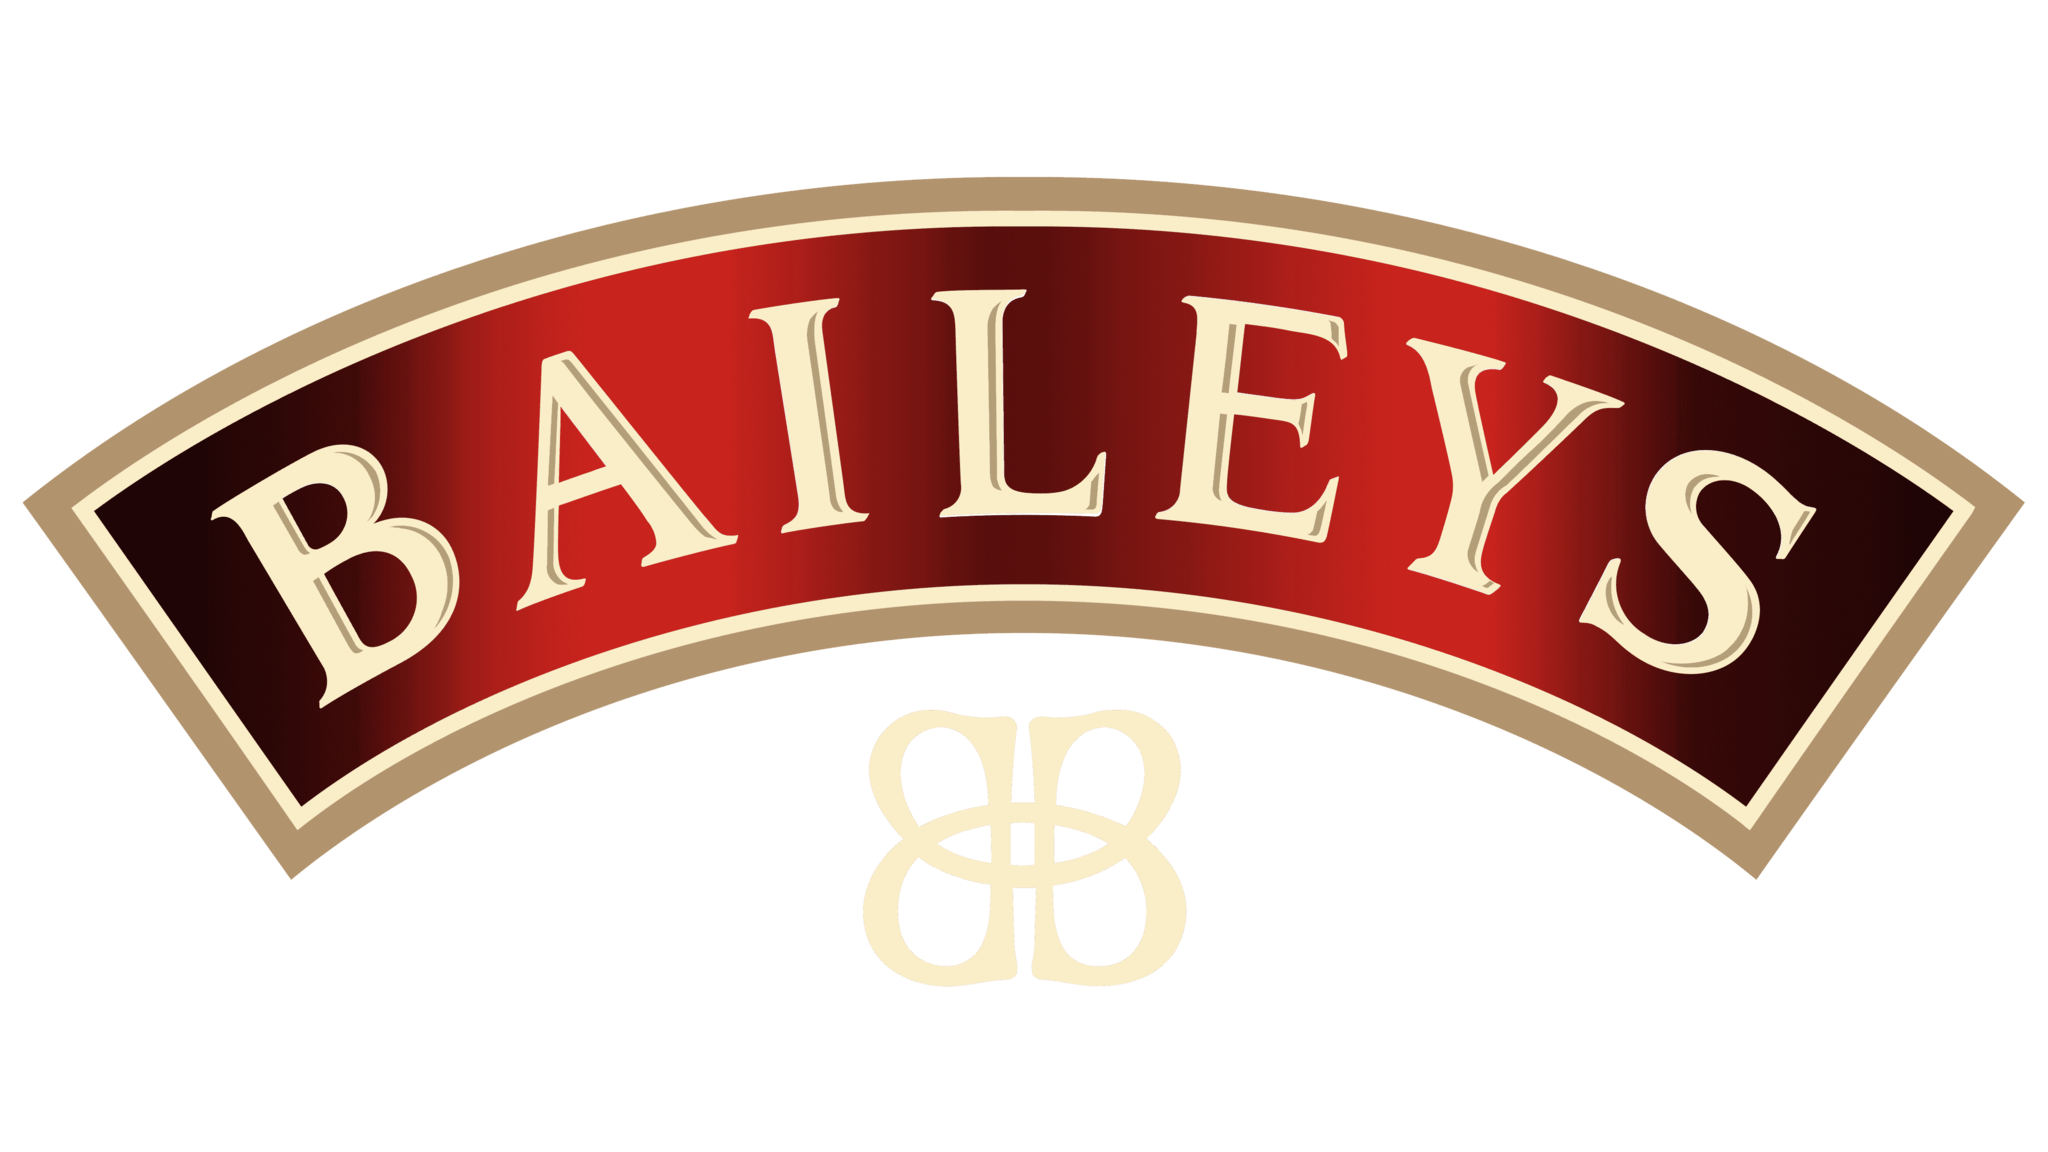 Ben je op zoek naar producten van het merk Baileys? Bekijk onze assortiment op www.duitsevoordeeldrogist.nl